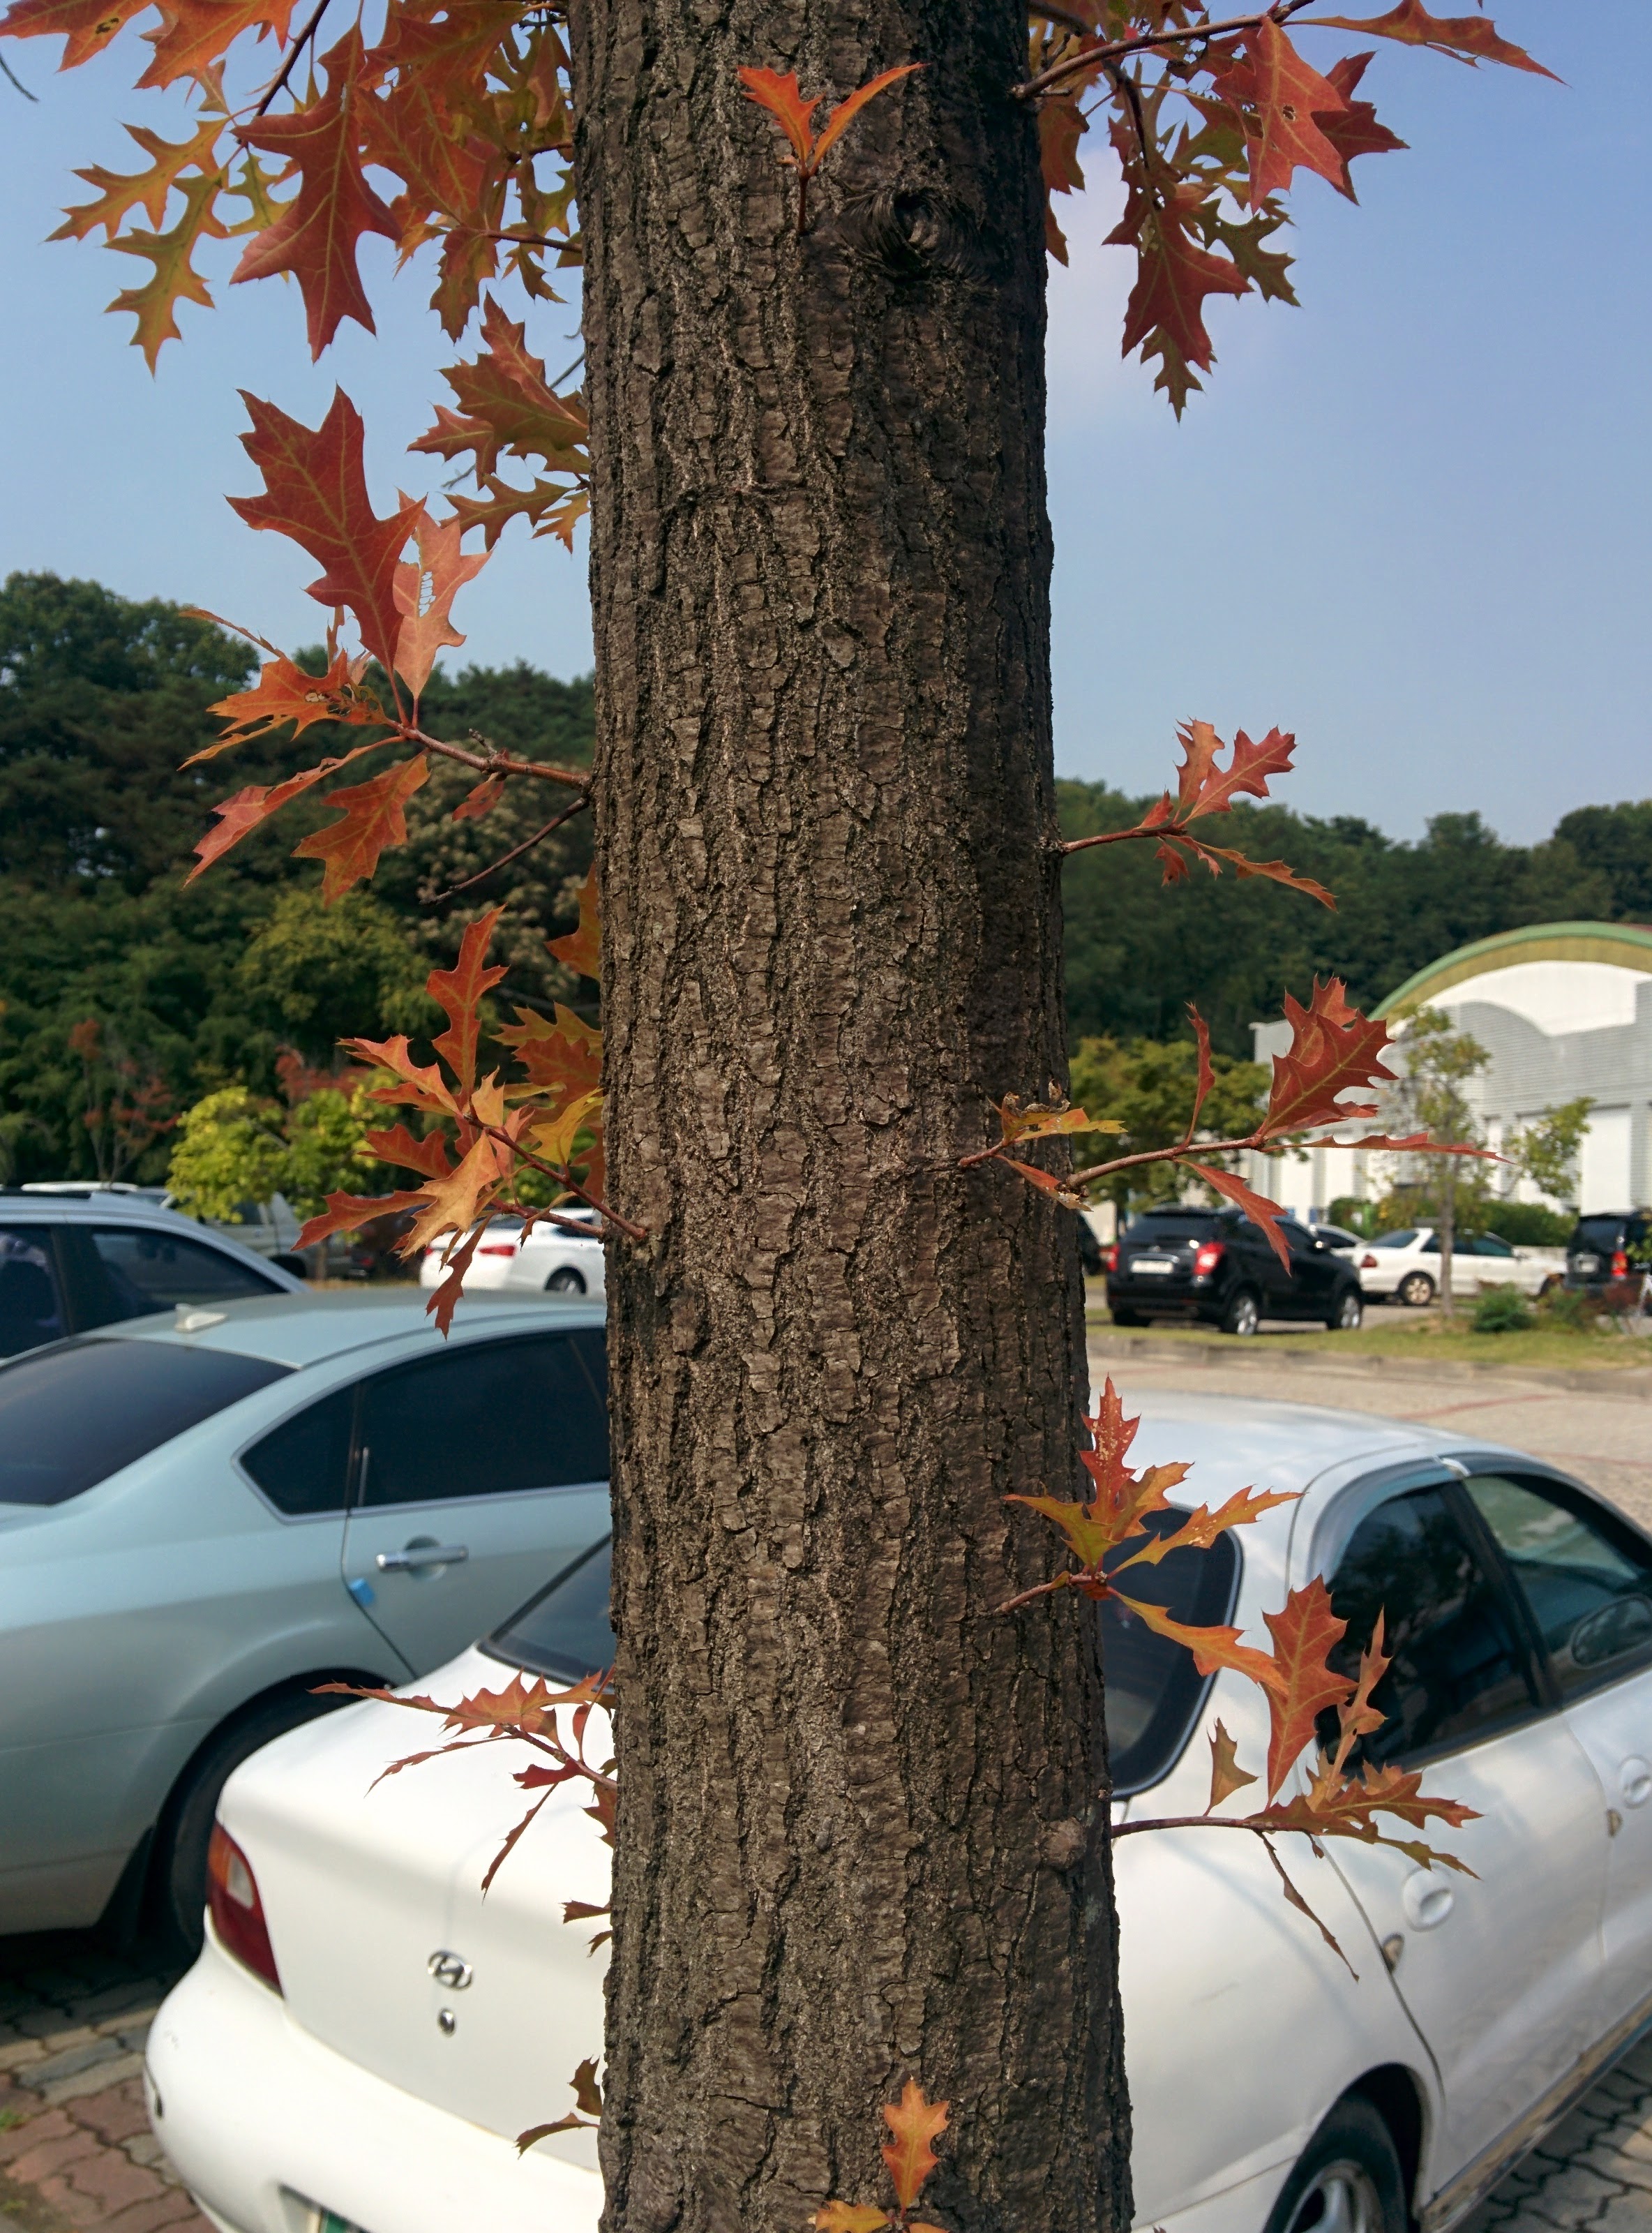 IMG_20151008_123227.jpg 길쭉한 단풍잎... 큼직한 톱니모양 나뭇잎의 단풍 -- 대왕참나무